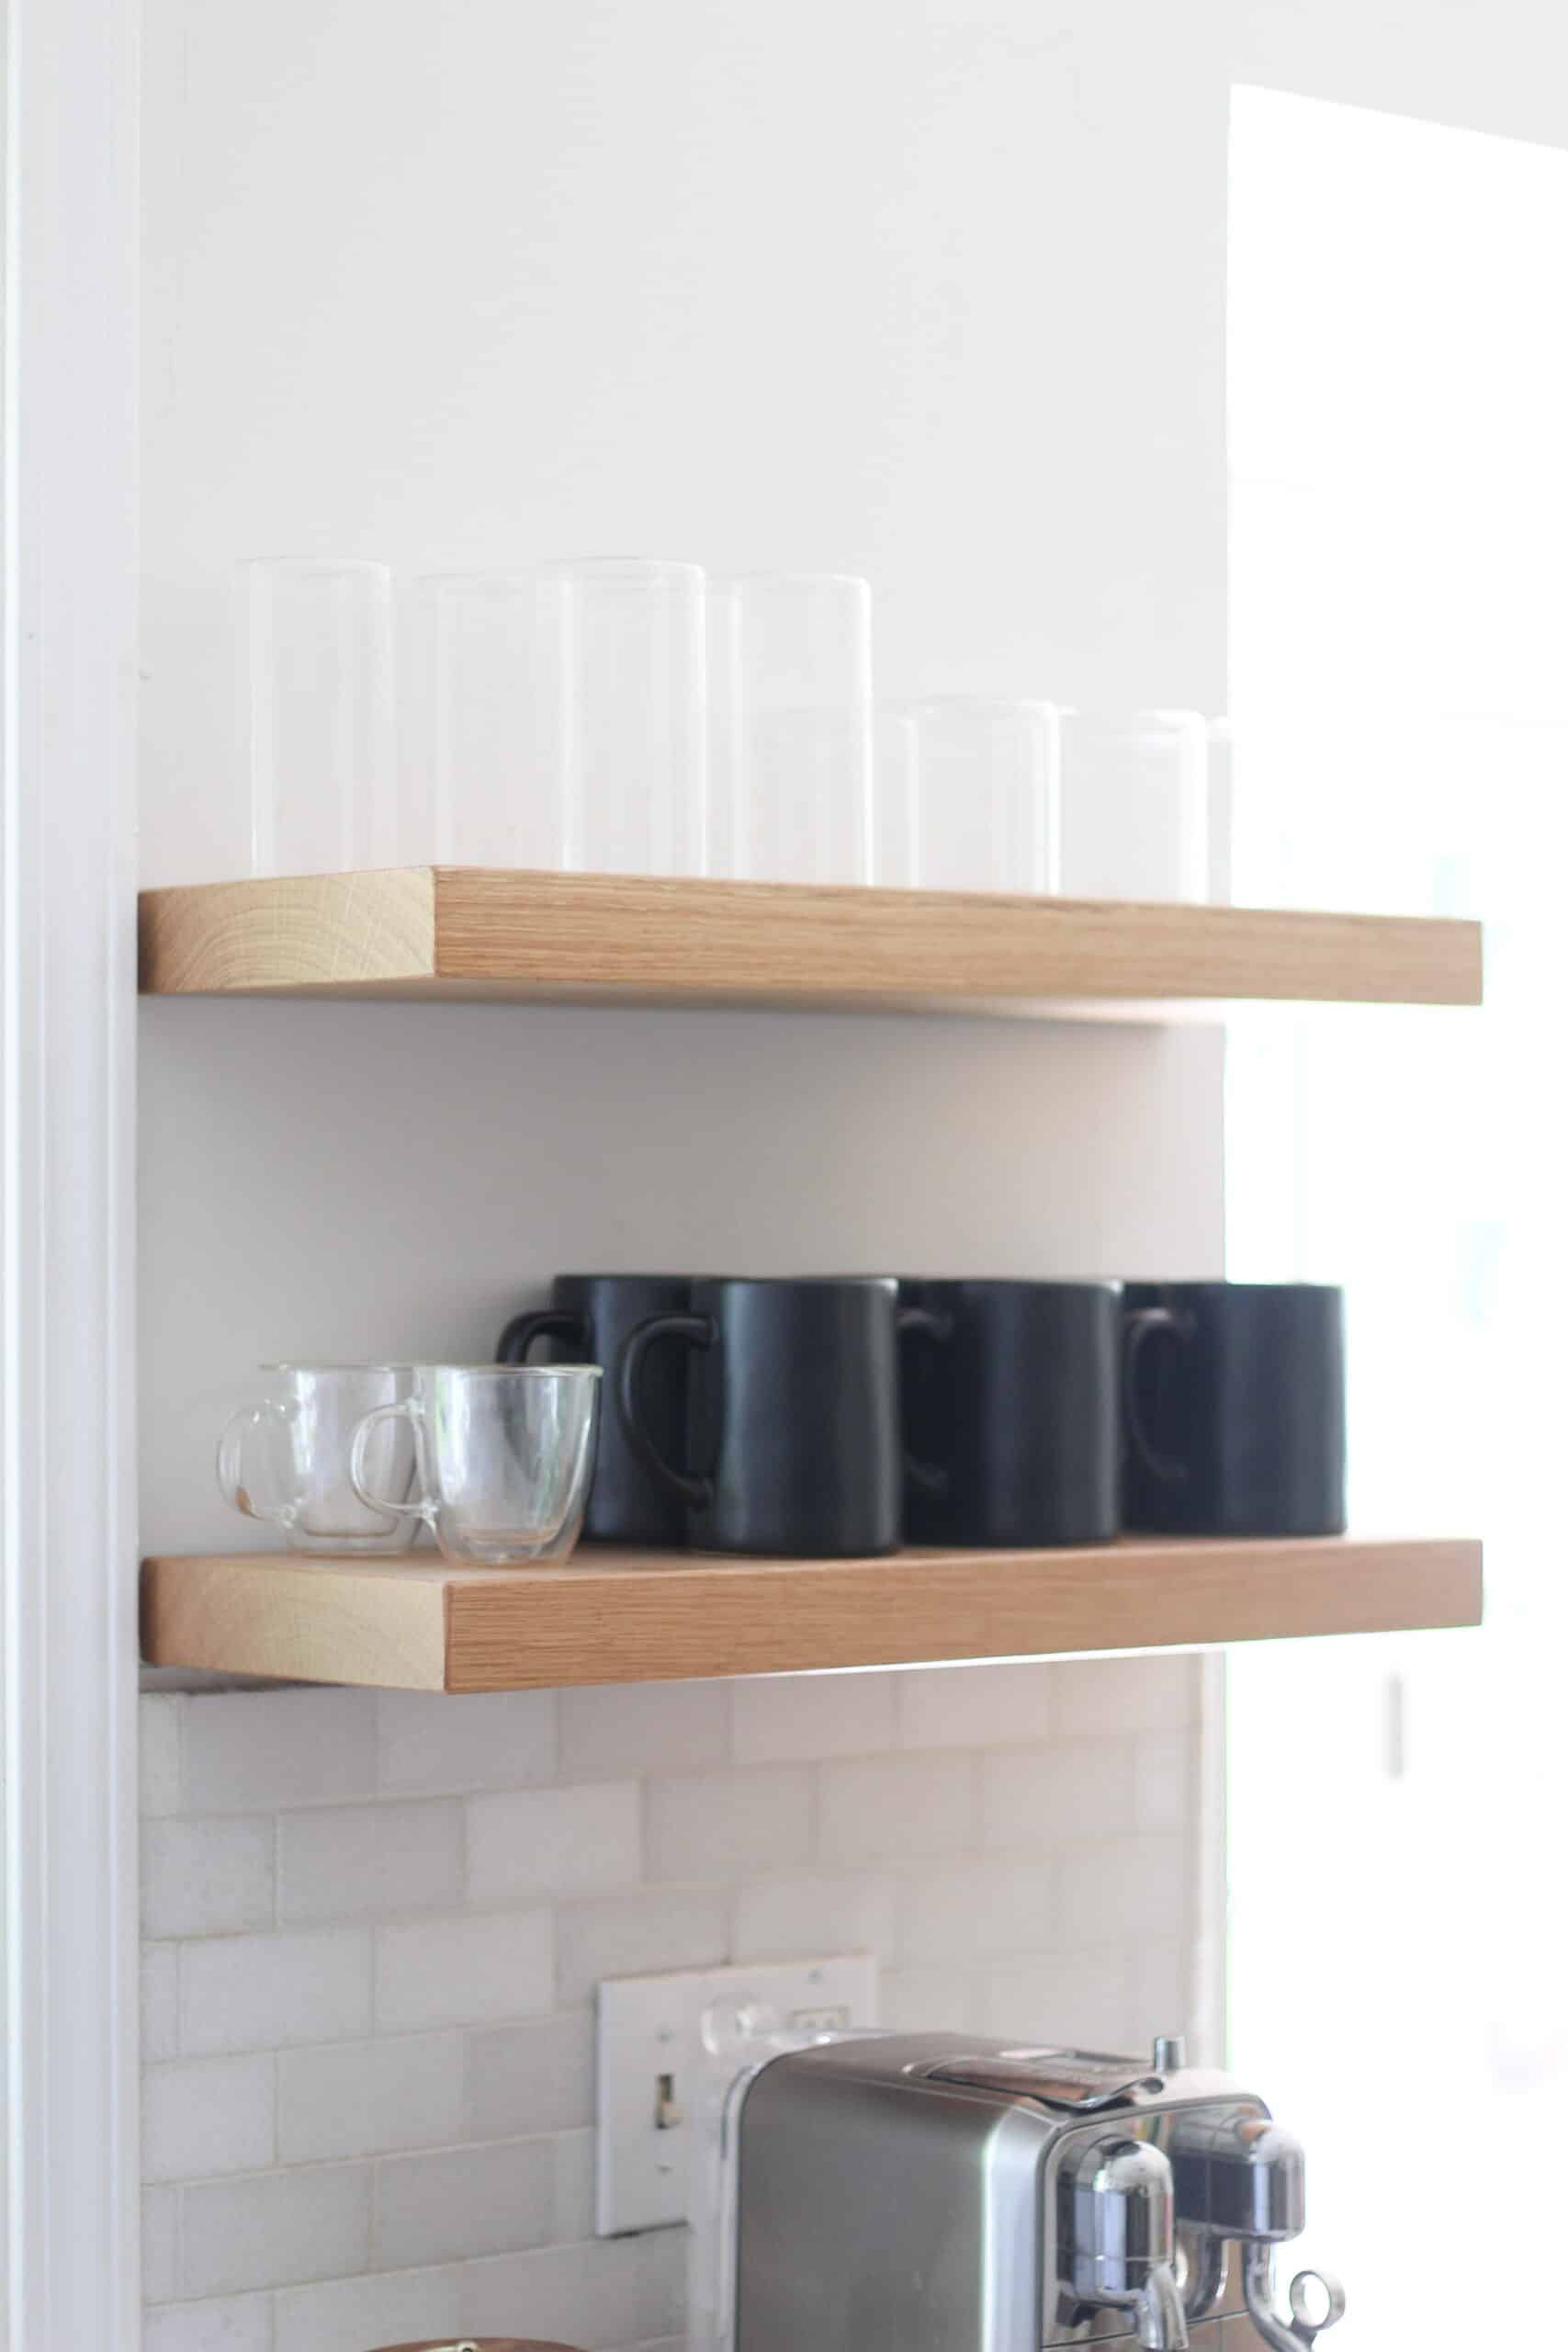 Diy Bar Shelf Ideas: Build Stylish Storage Shelves - Arinsolangeathome